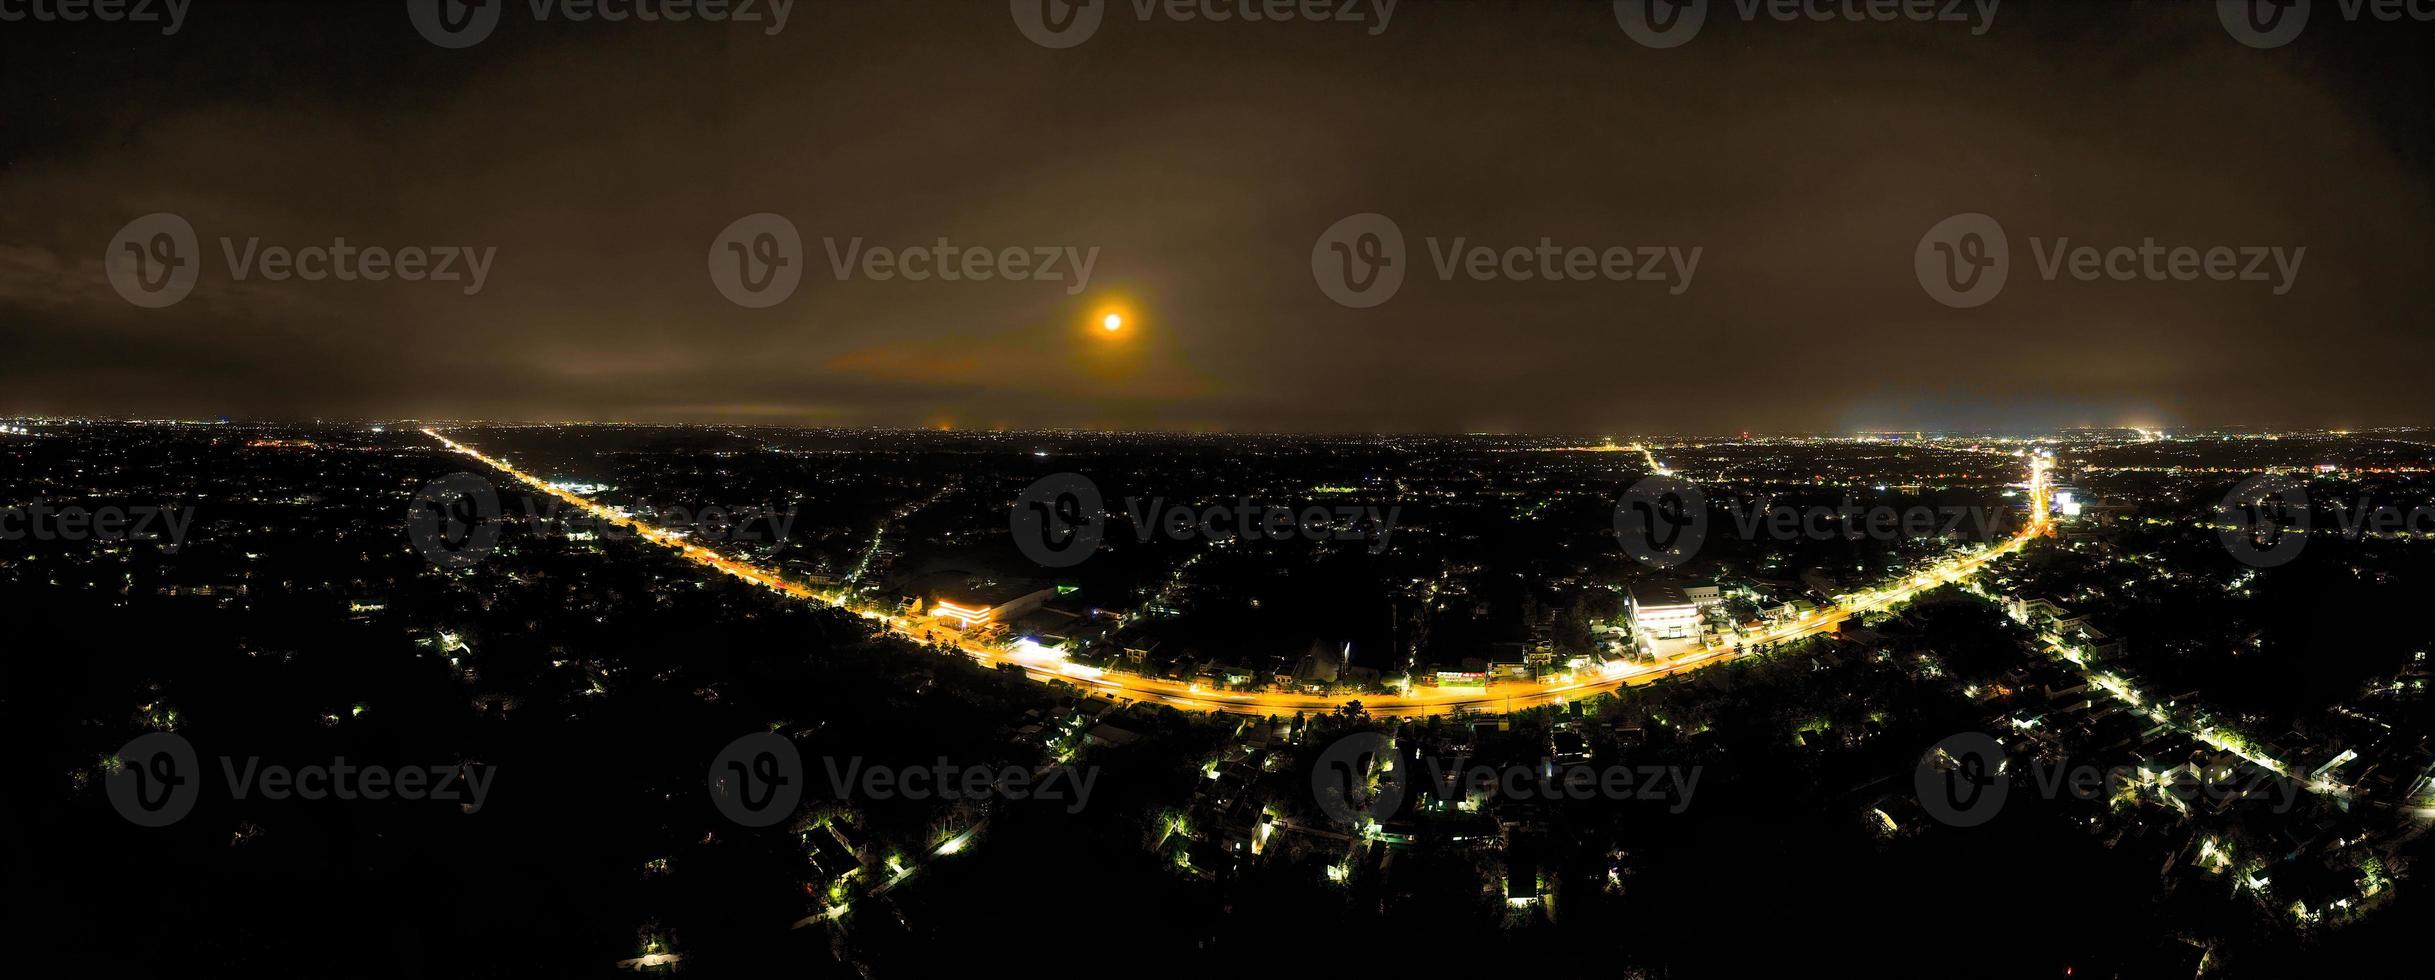 full måne kör 360 panorama av motorväg i tien giang provins, vietnam med natt himmel och upplyst fordon under de röd måne foto